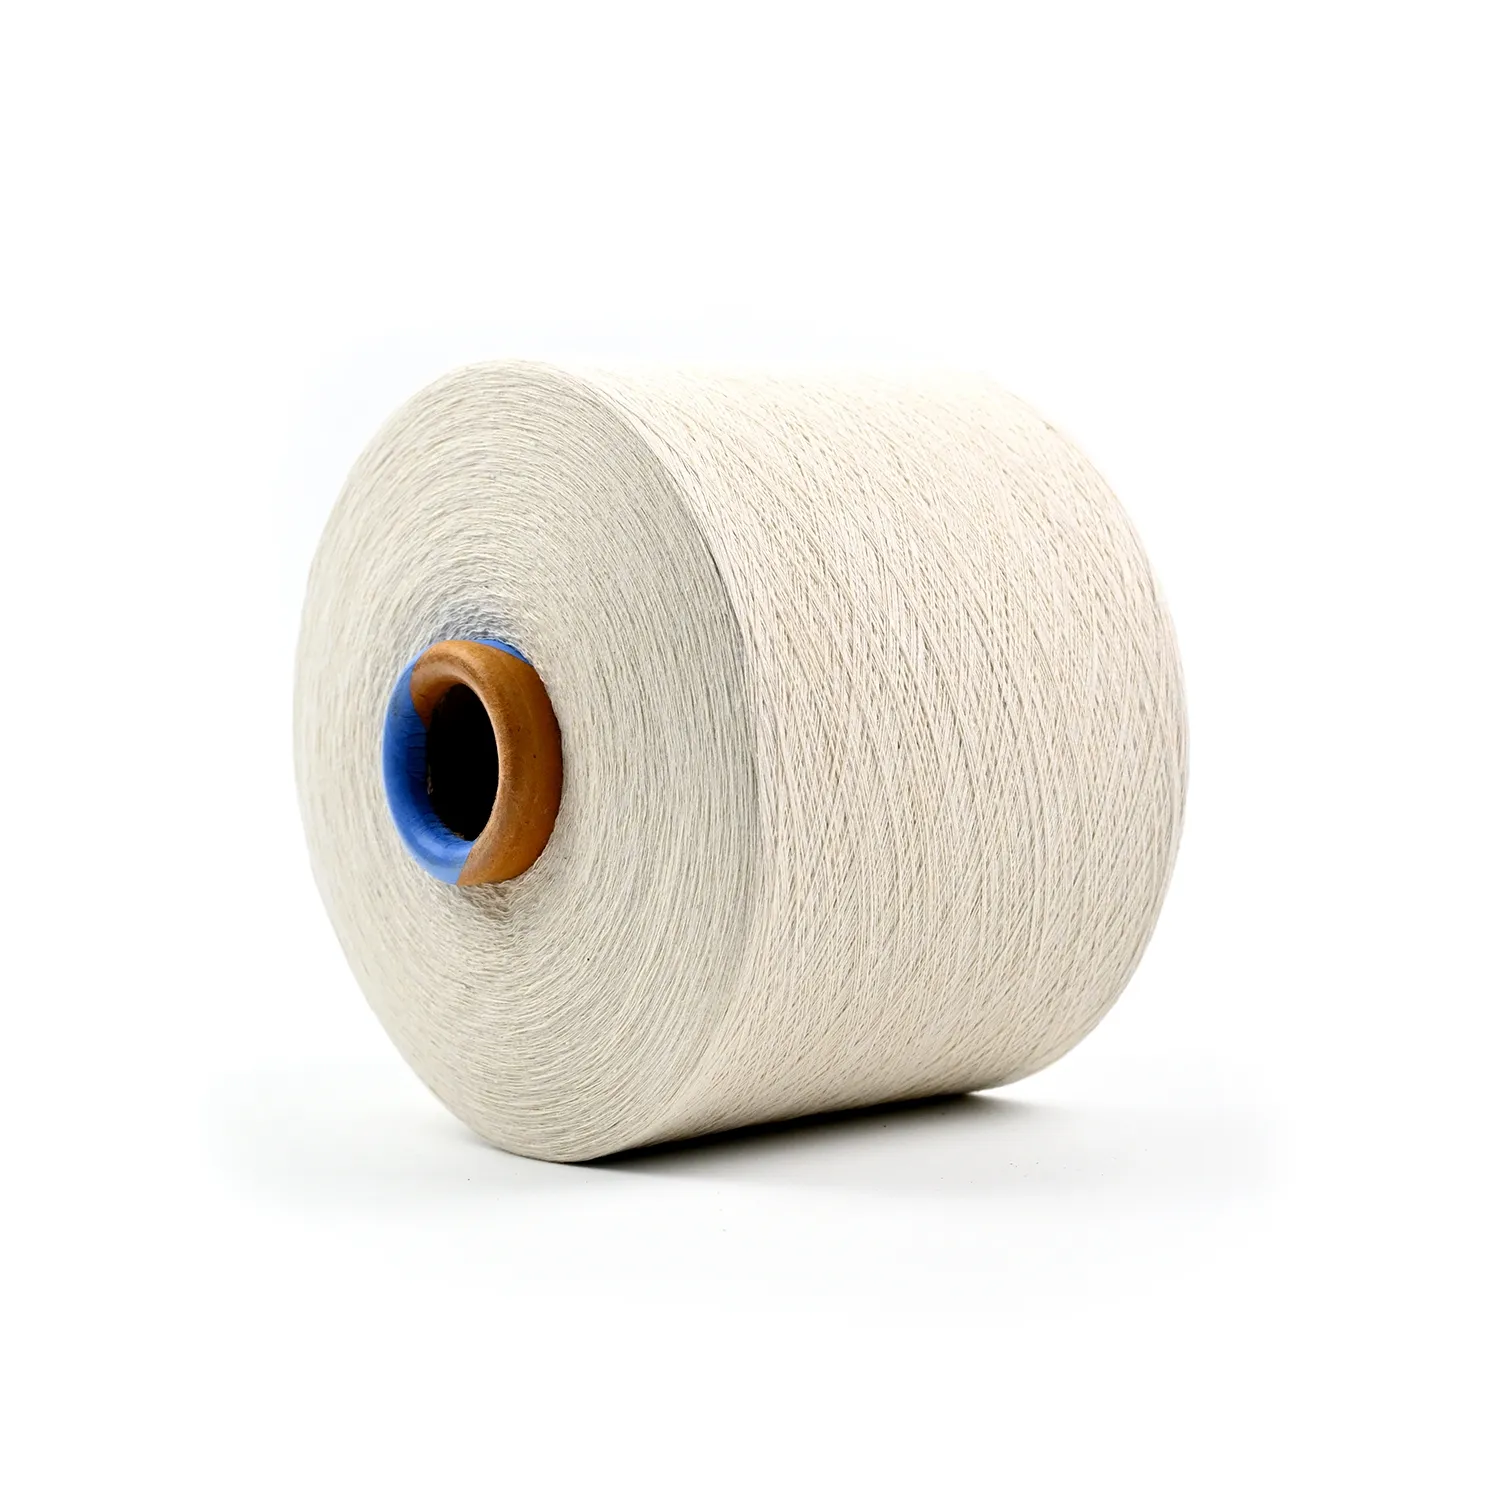 Benang kompak katun combed organik kualitas tinggi untuk menenun